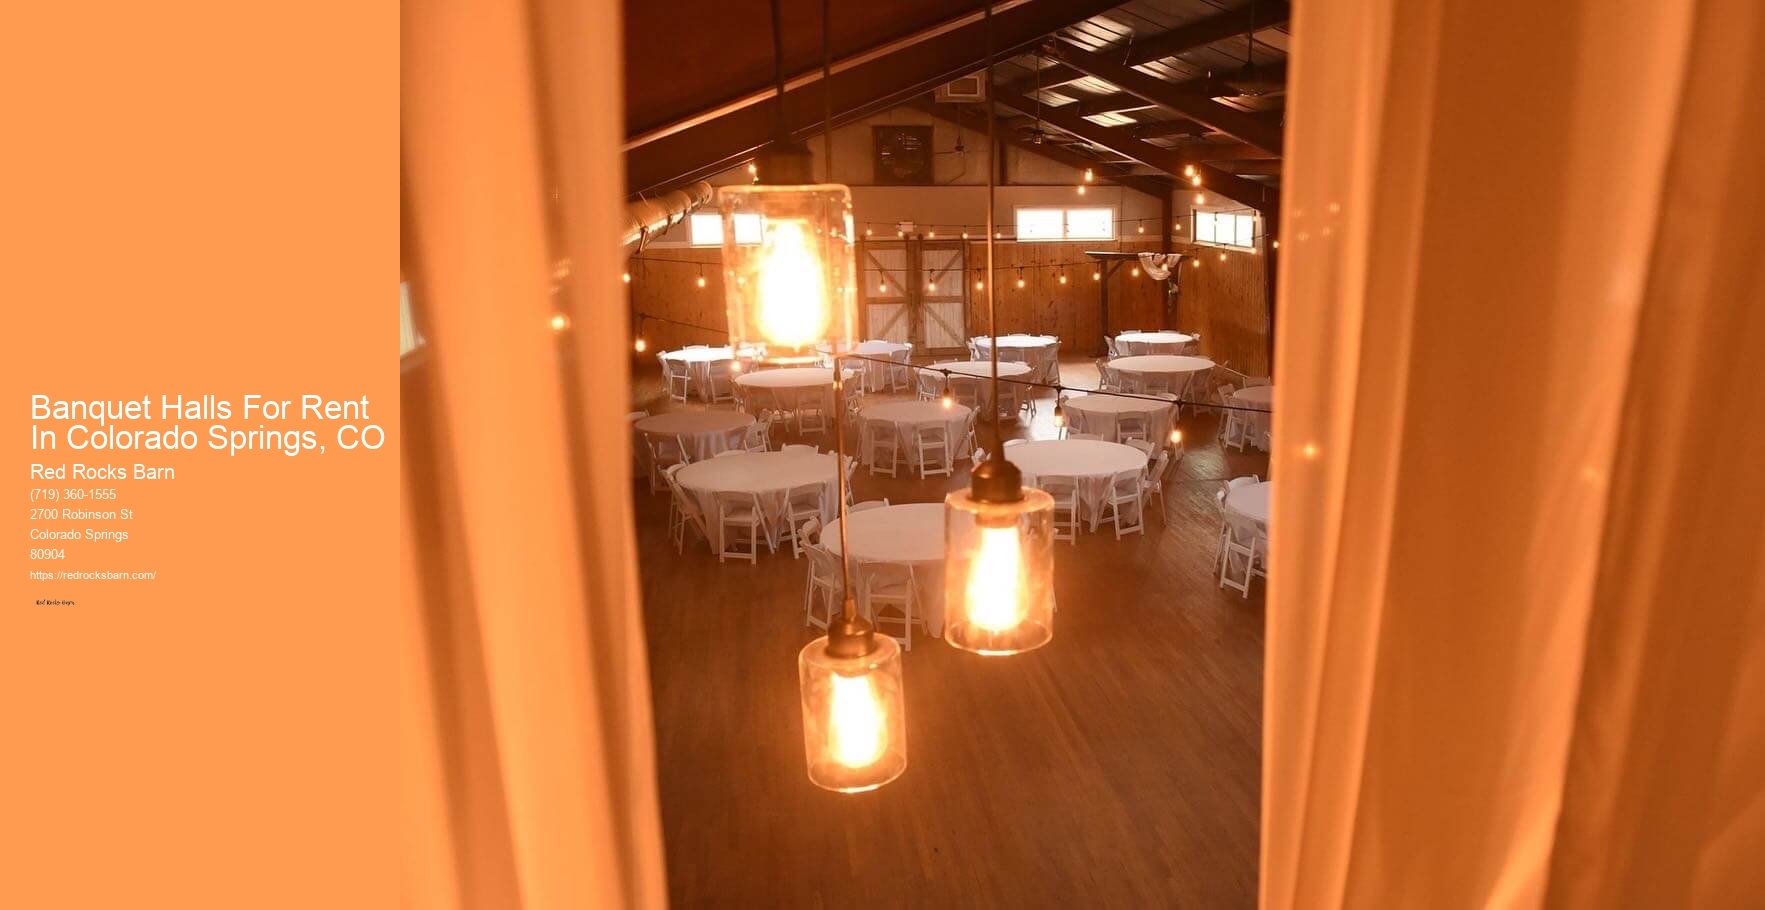 Banquet Halls For Rent In Colorado Springs, CO